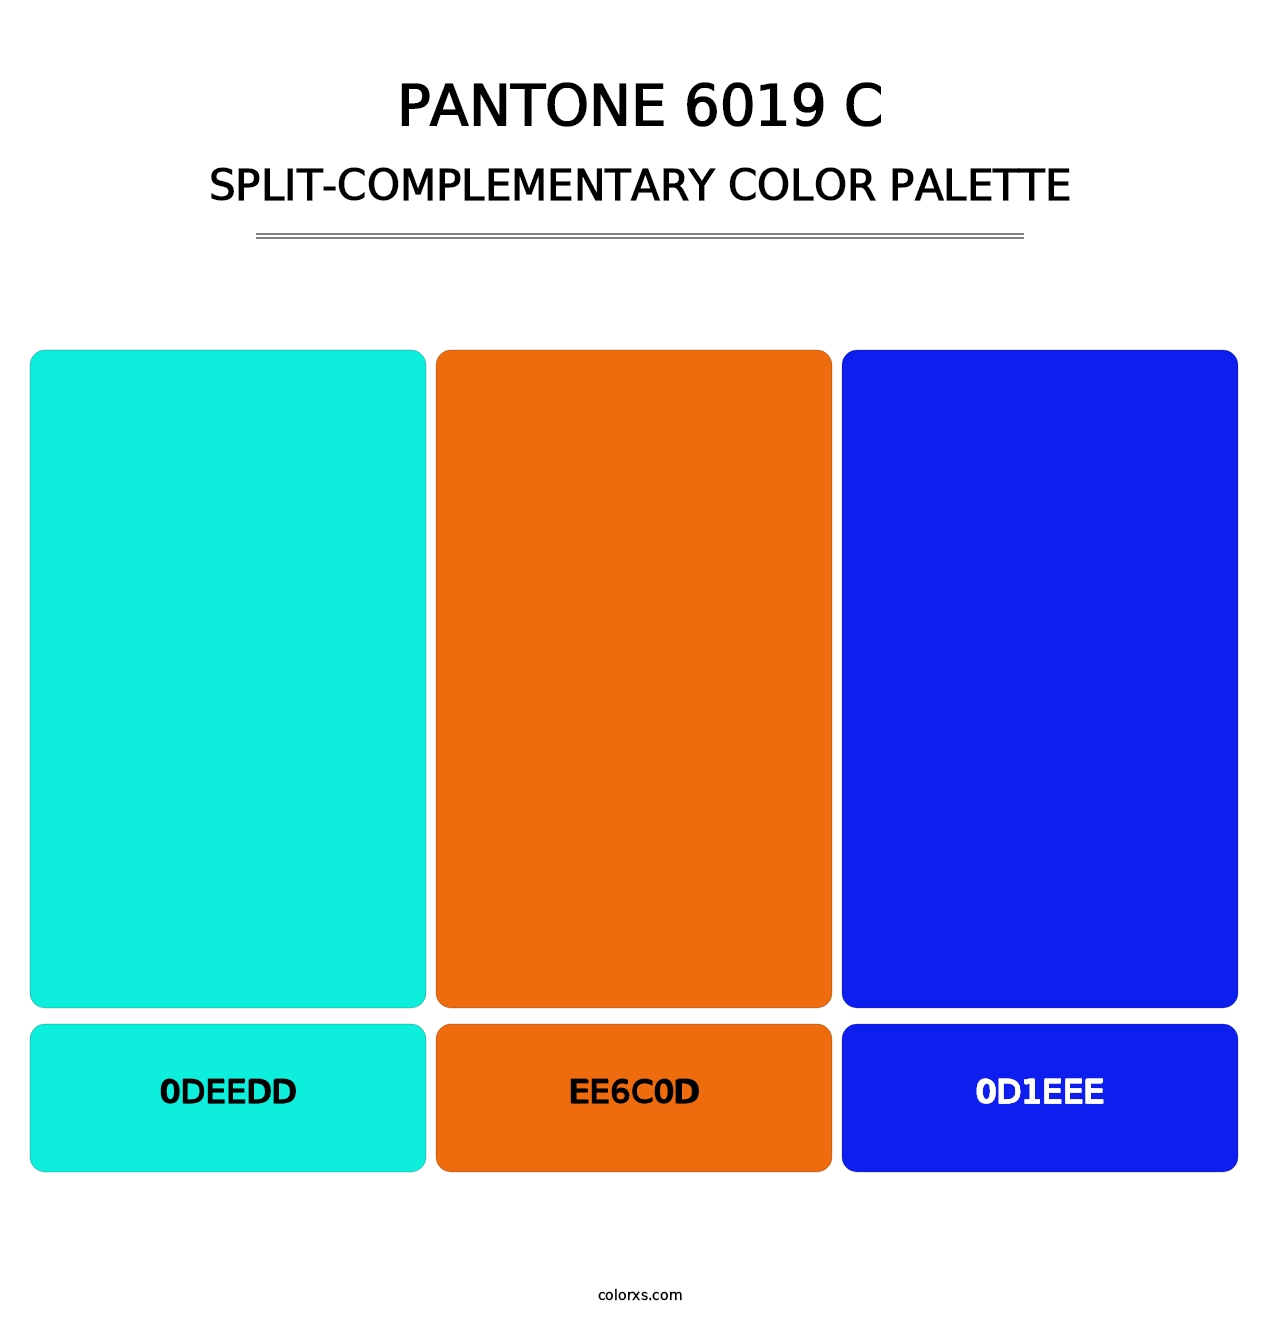 PANTONE 6019 C - Split-Complementary Color Palette